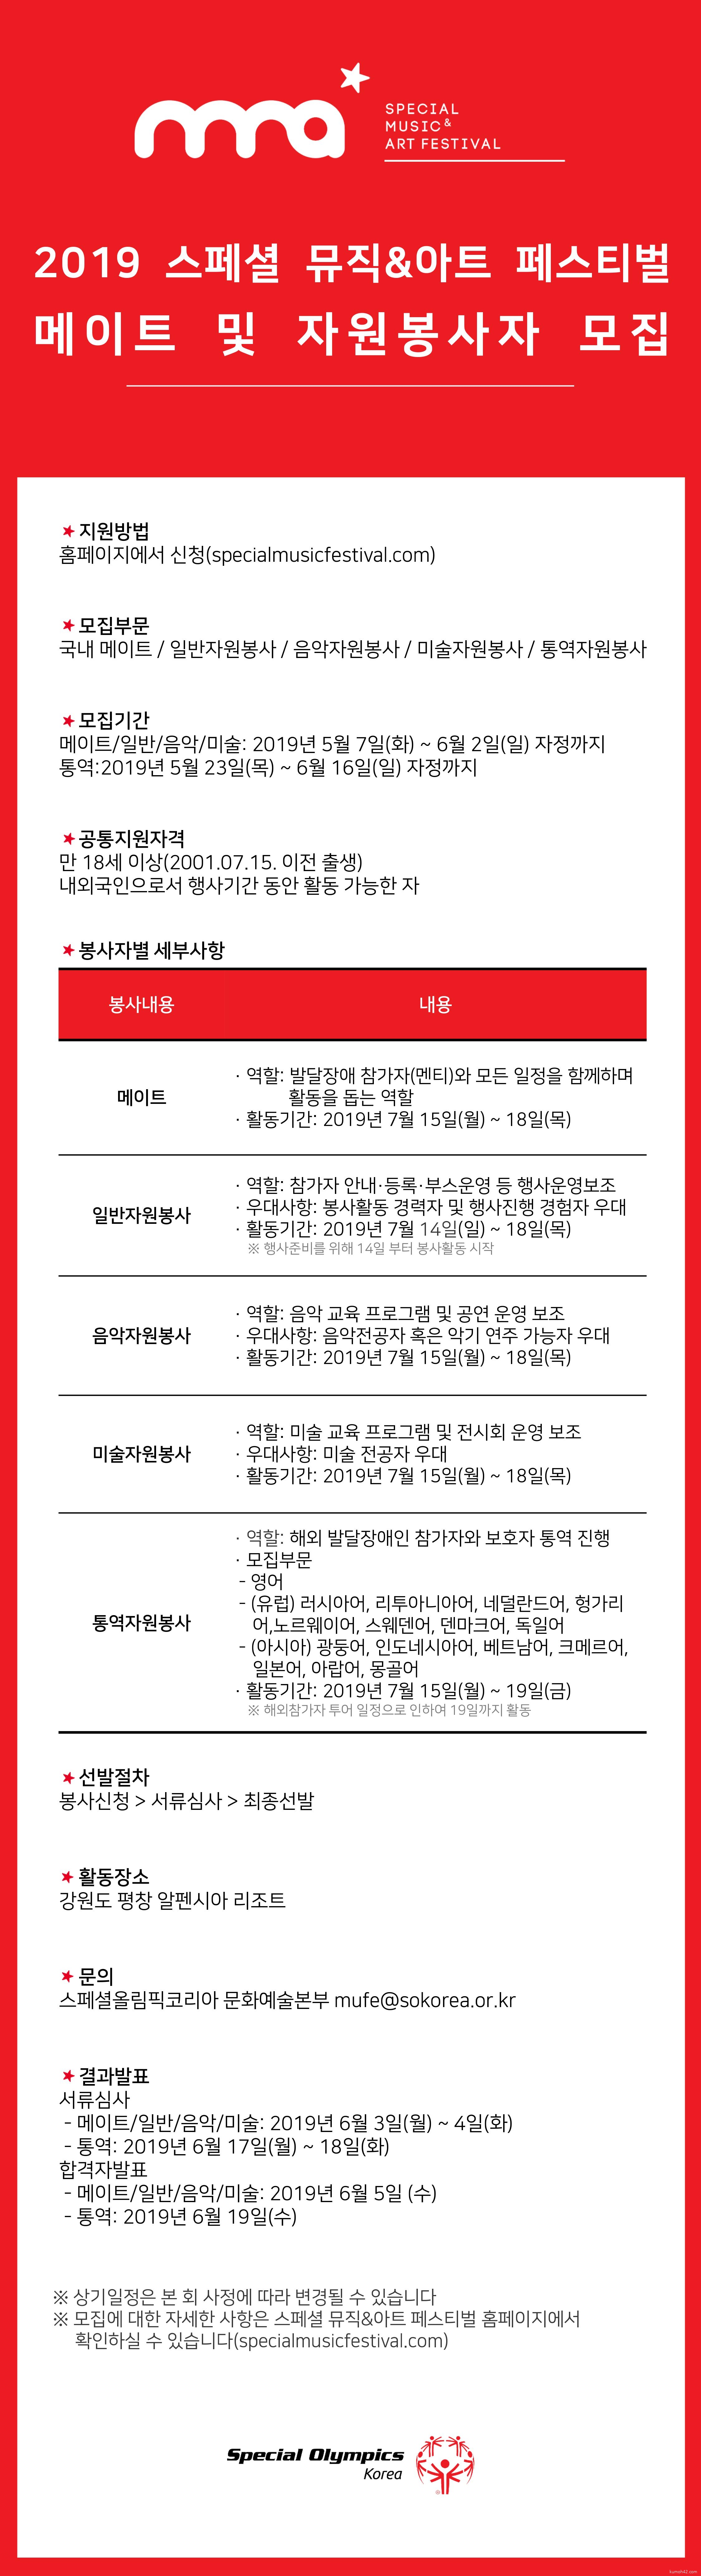 2019 스페셜 뮤직&아트 페스티벌 메이트 및 자원봉사자 모집공고 게시물.jpg